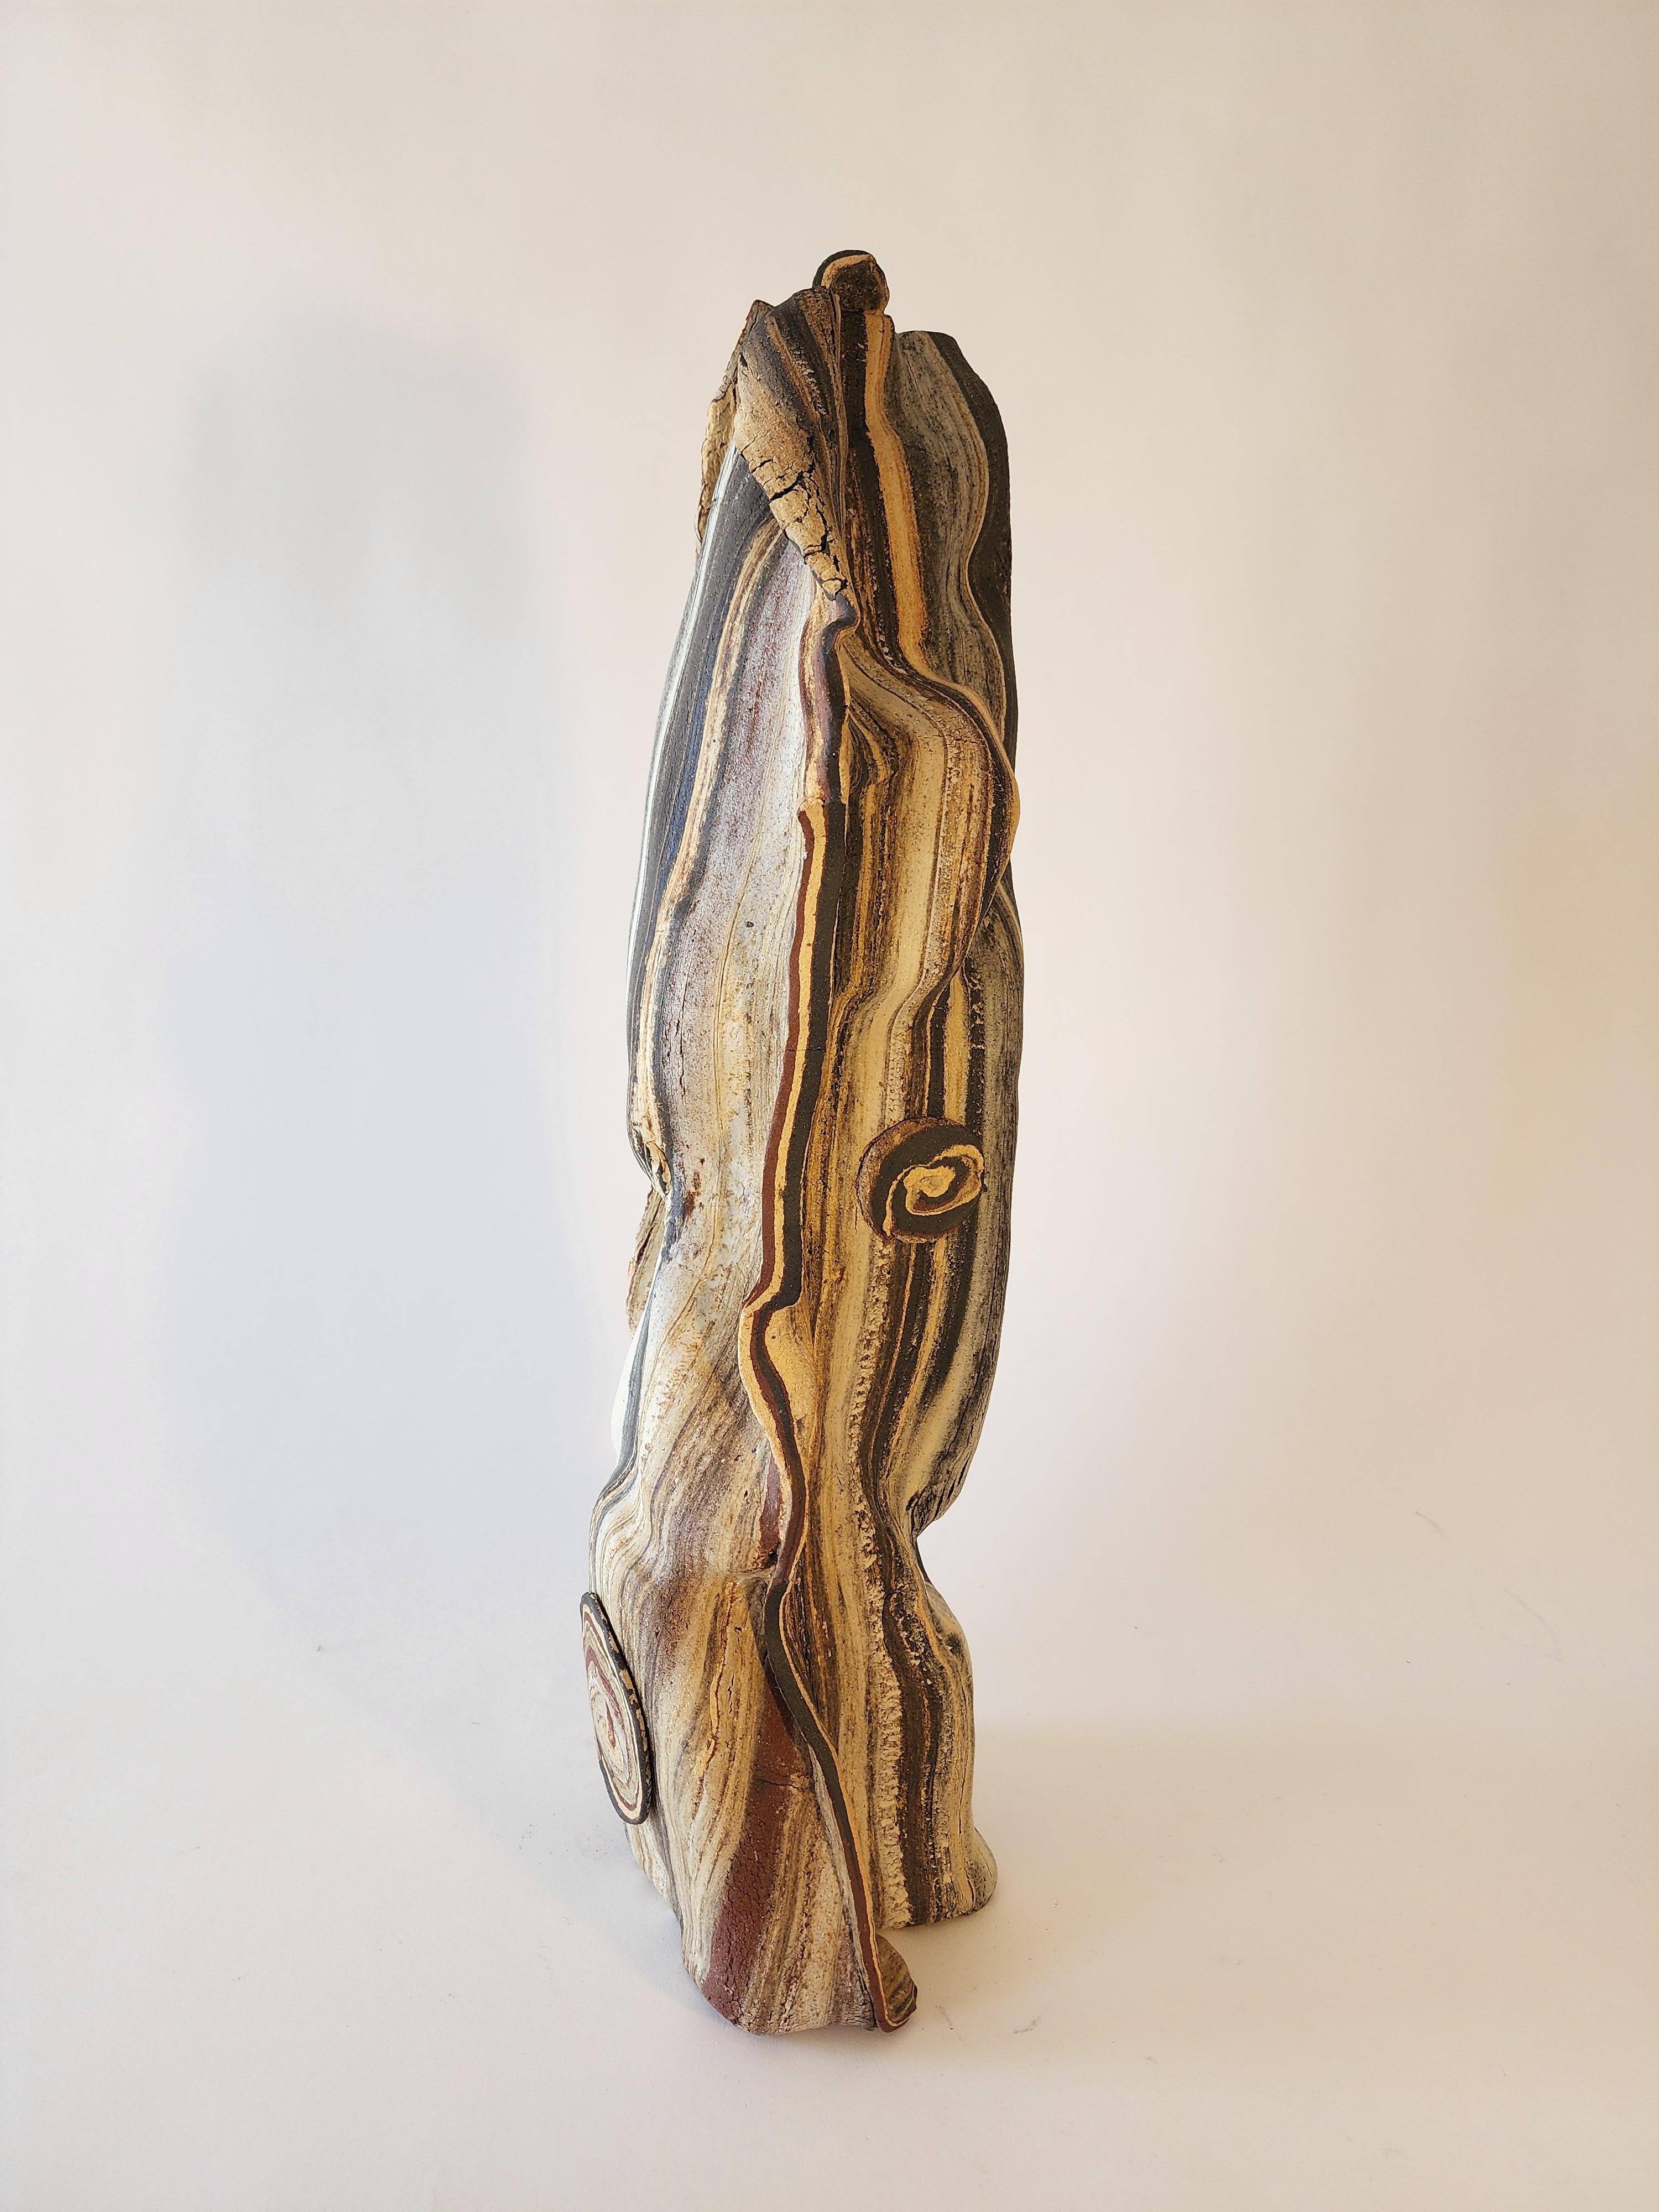 NOR Swirl 2 - Sculpture by Anna Bush Crews